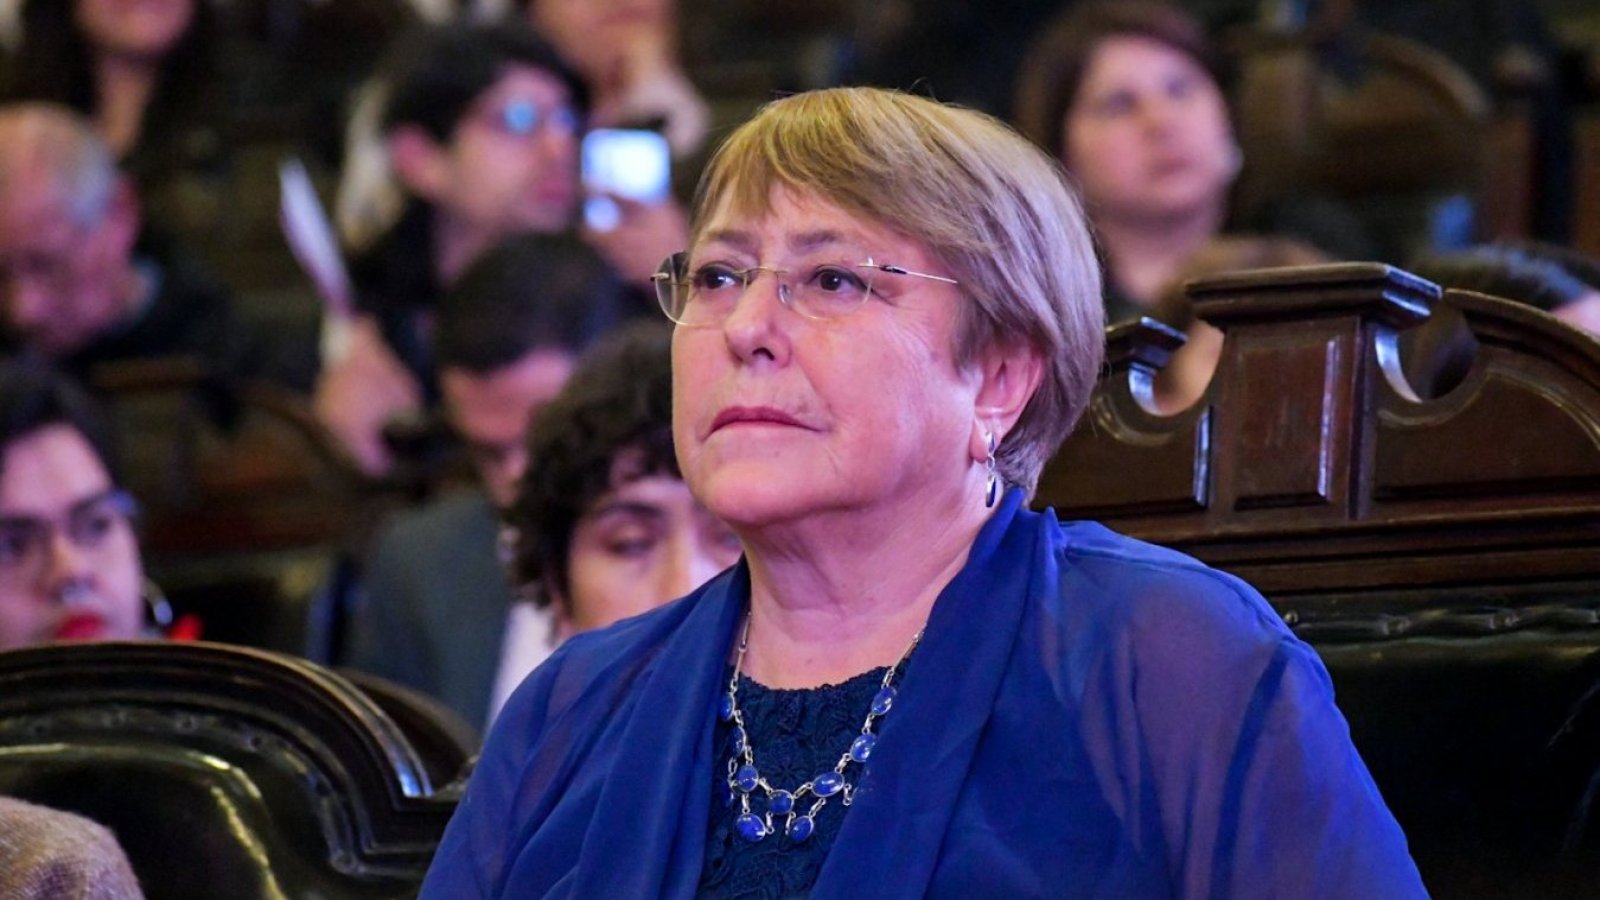 Expdta. Bachelet expresa condolencias tras asesinato de carabineros: "Nos afecta profundamente a todos y todas"